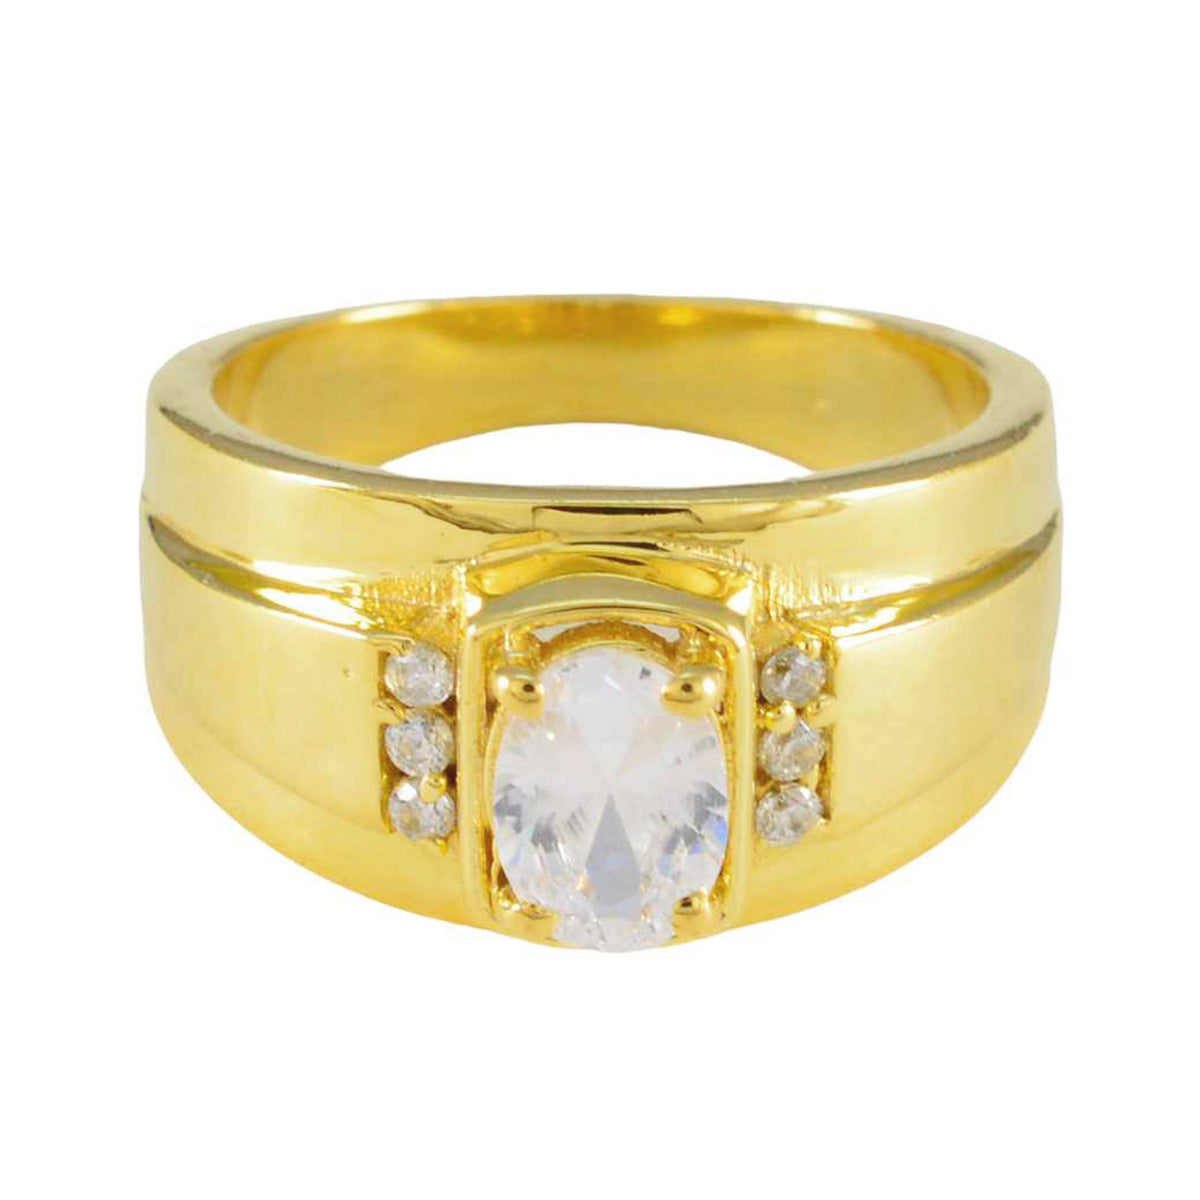 Riyo – bague en argent pour exportateur, plaqué or jaune, pierre cz blanche, forme ovale, réglage de griffes, bijoux anciens, bague d'anniversaire